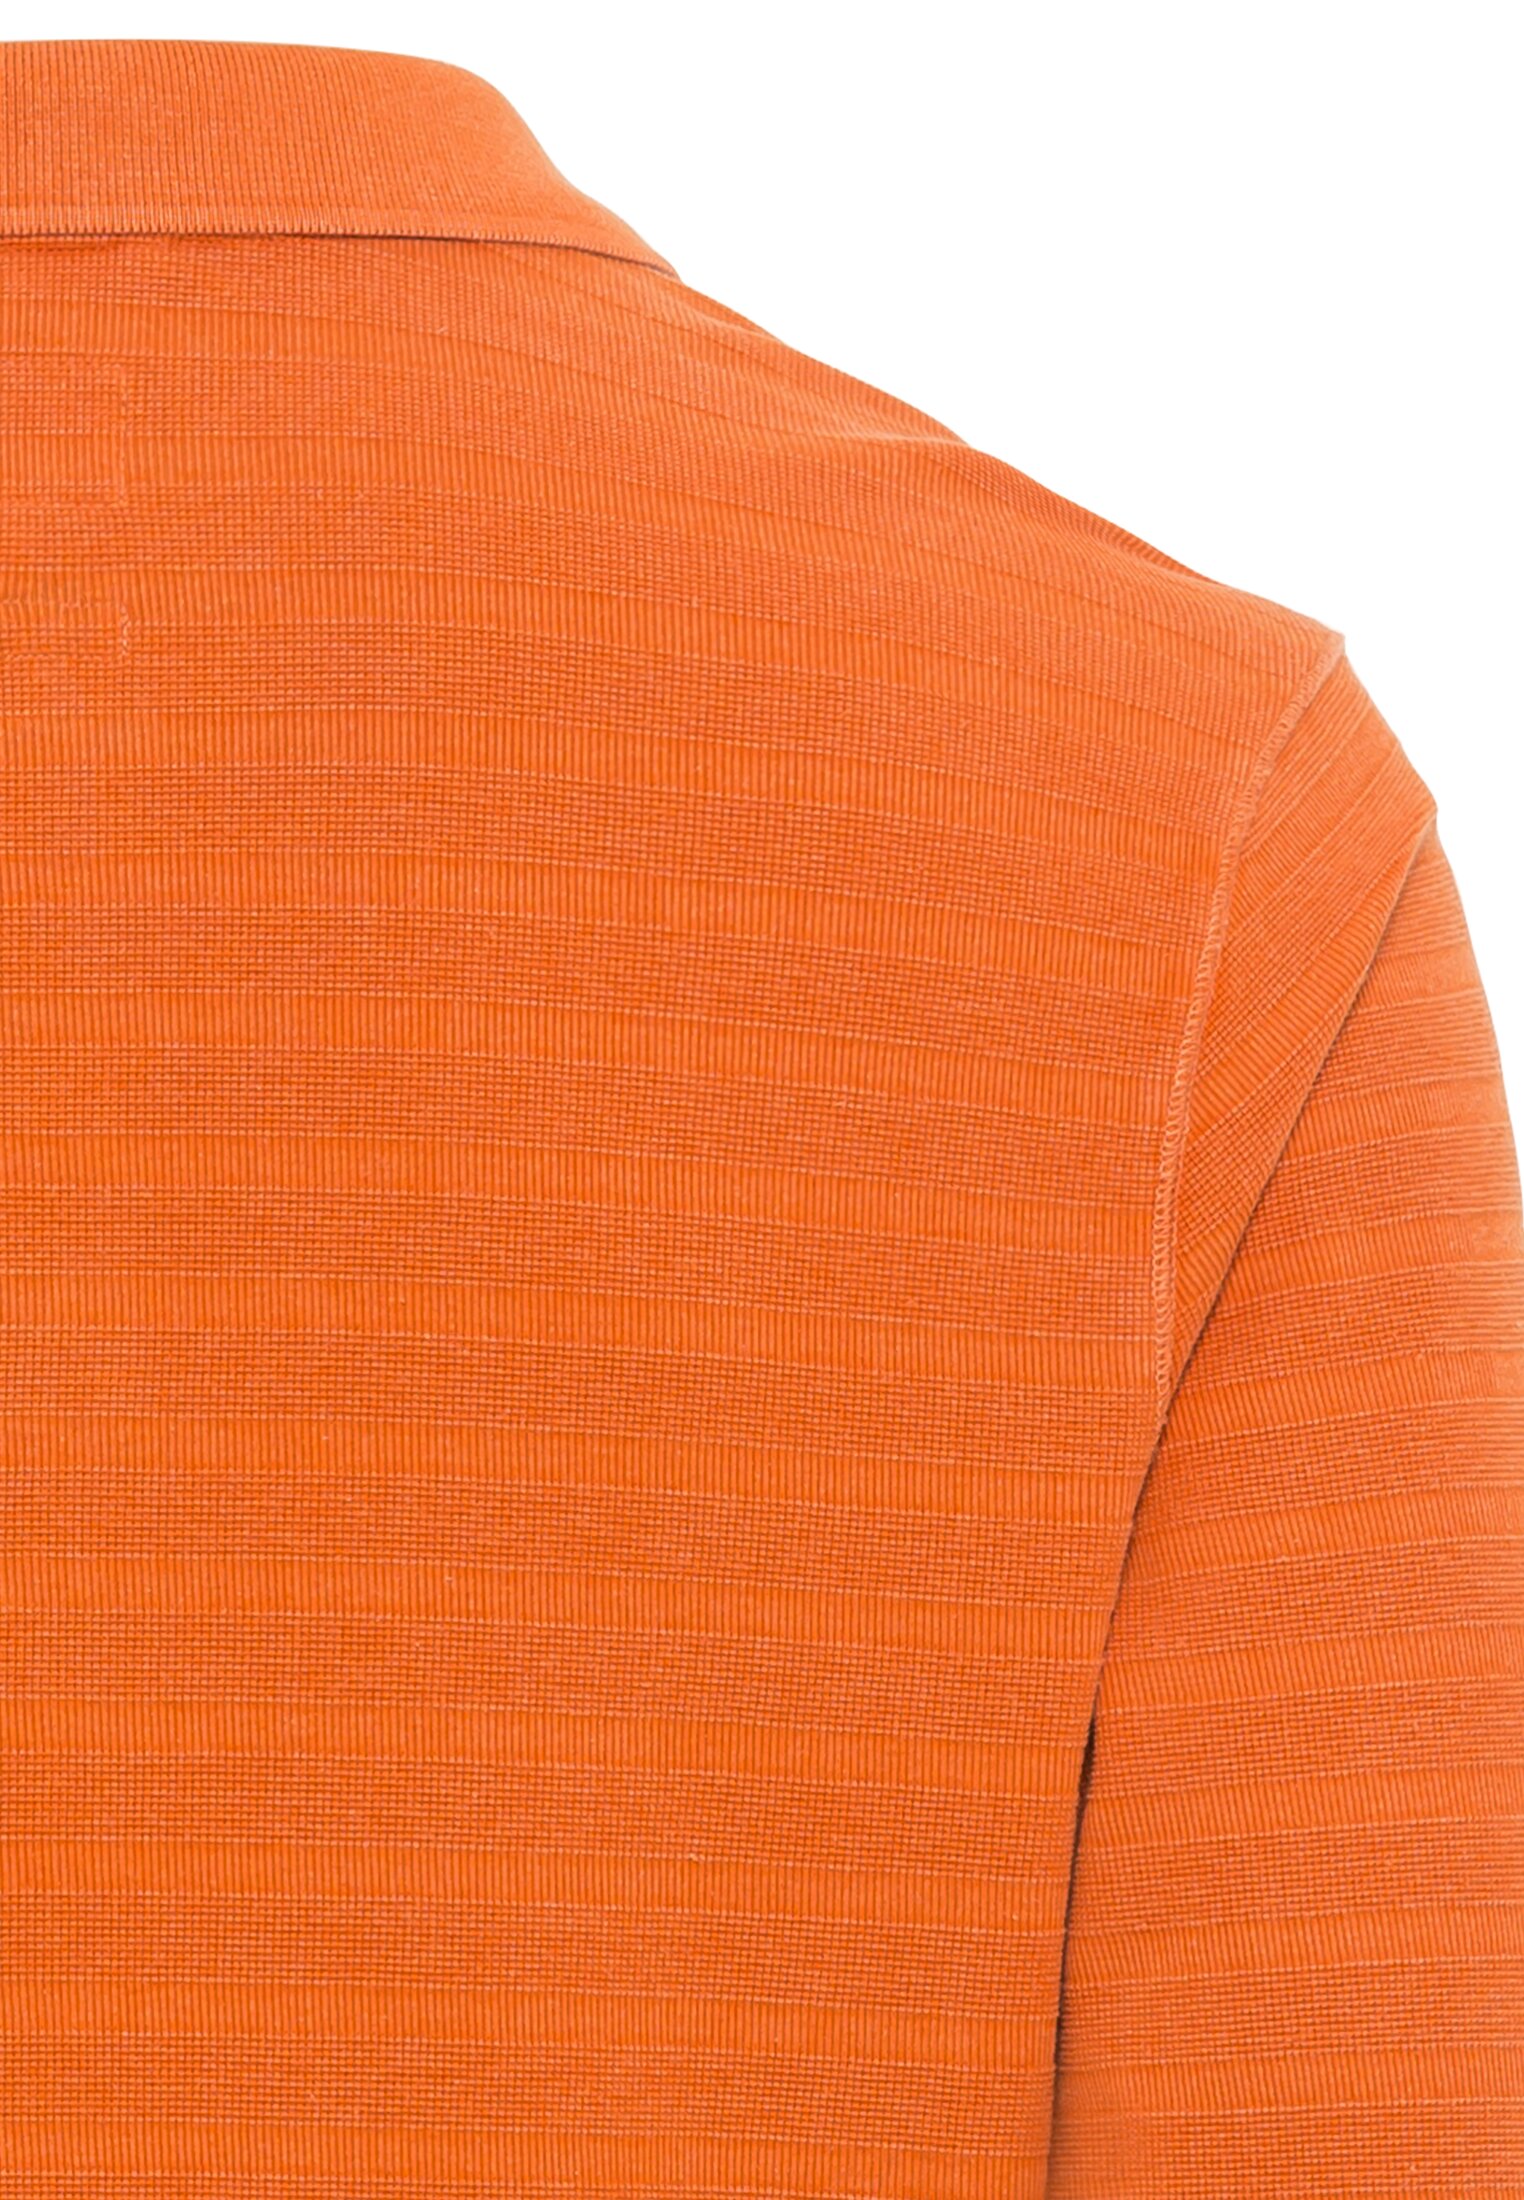 Мужское поло Camel Active, оранжевое, цвет оранжевый, размер 50 - фото 4